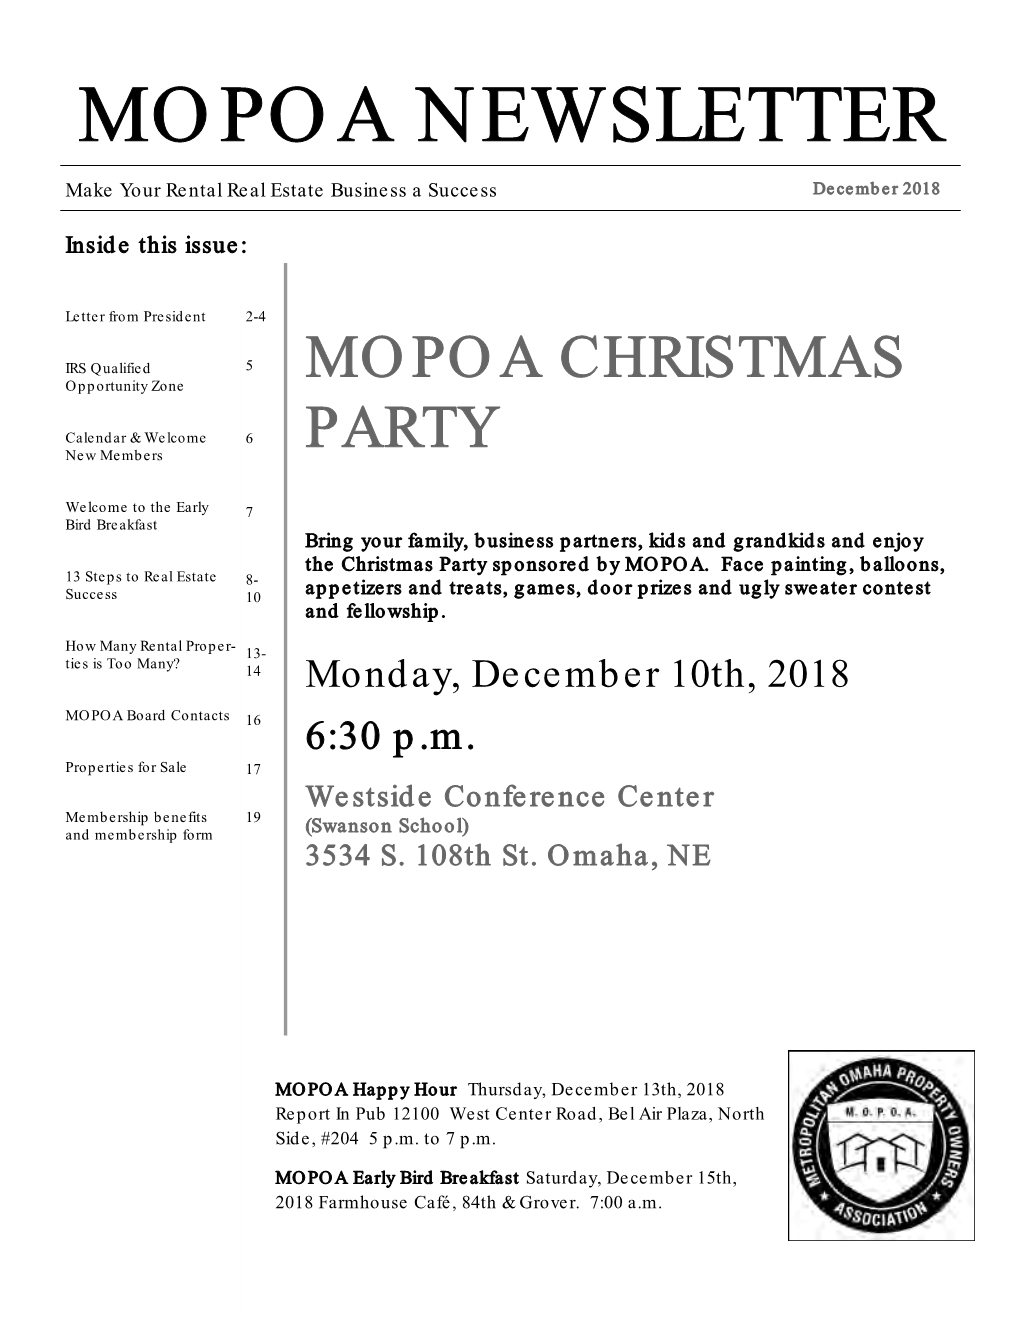 Mopoa Newsletter